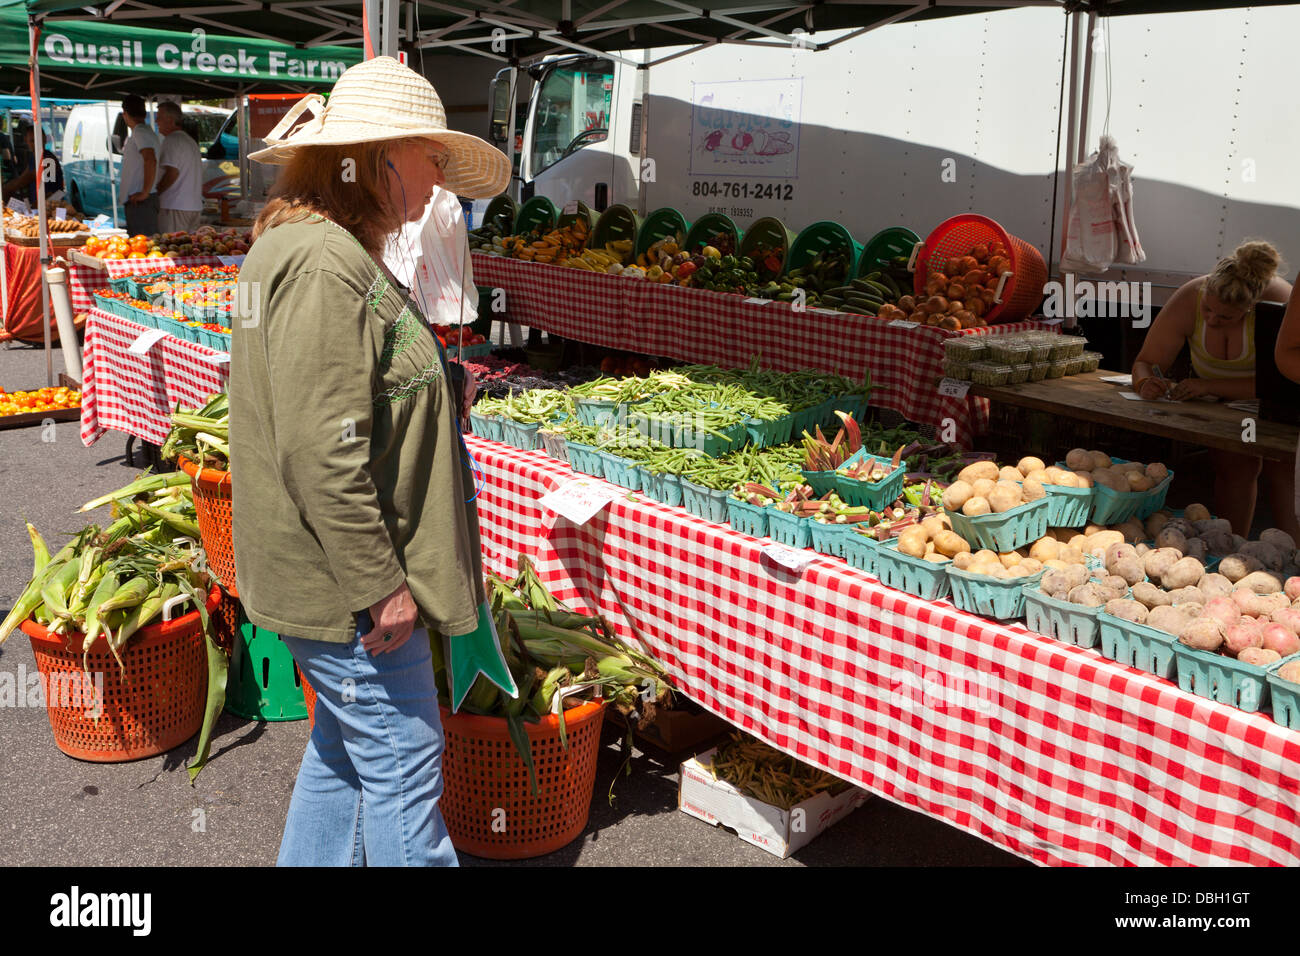 Femme parcourt des légumes frais au marché de fermiers - Washington, DC USA Banque D'Images